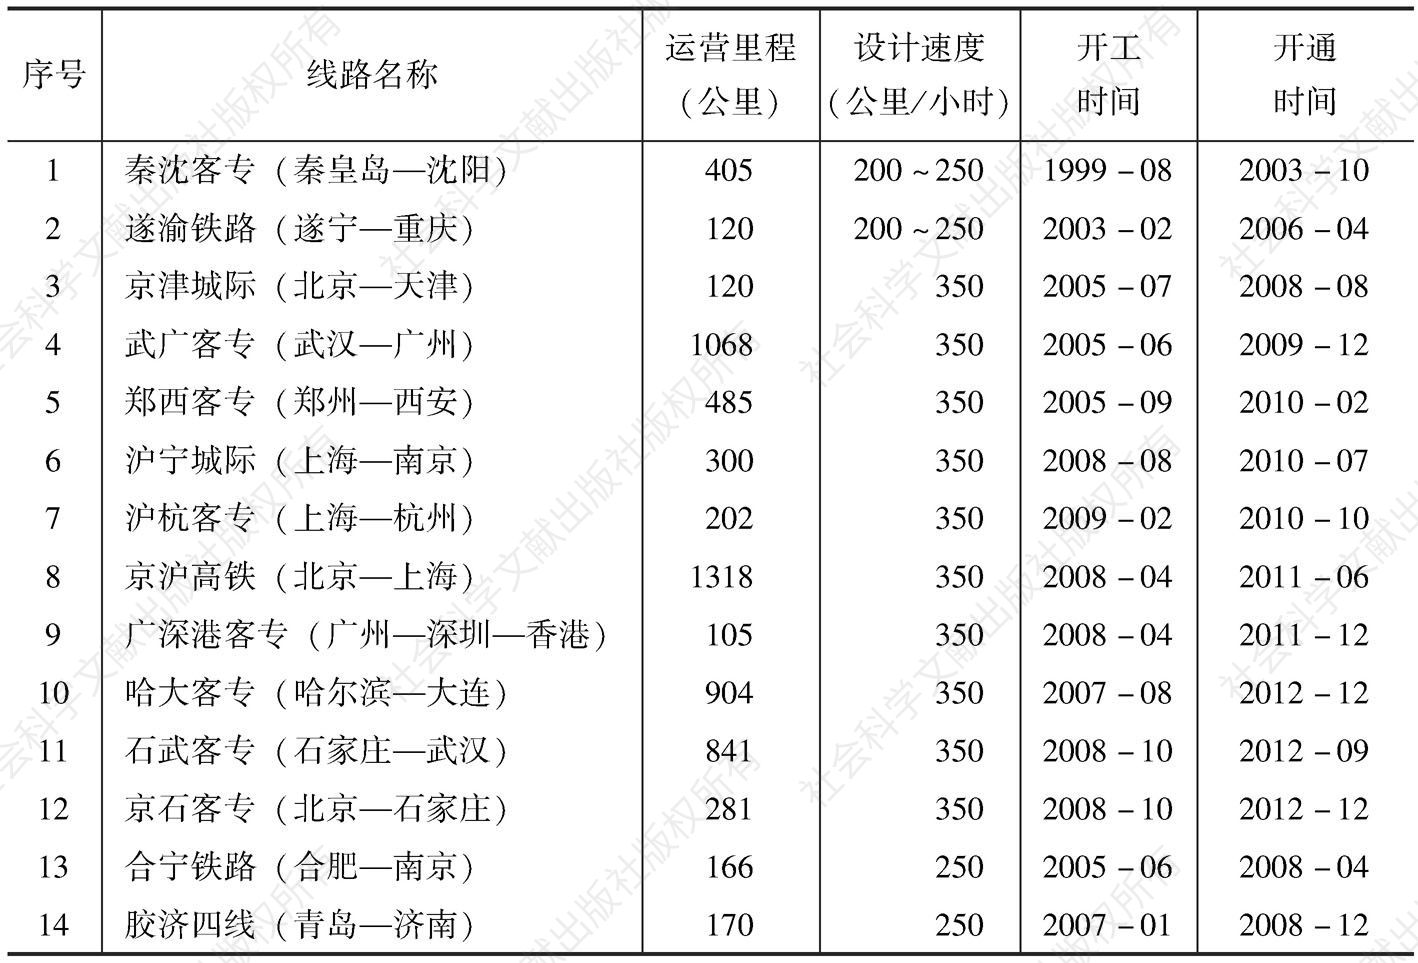 表1-3 中国投入运营的高速铁路统计